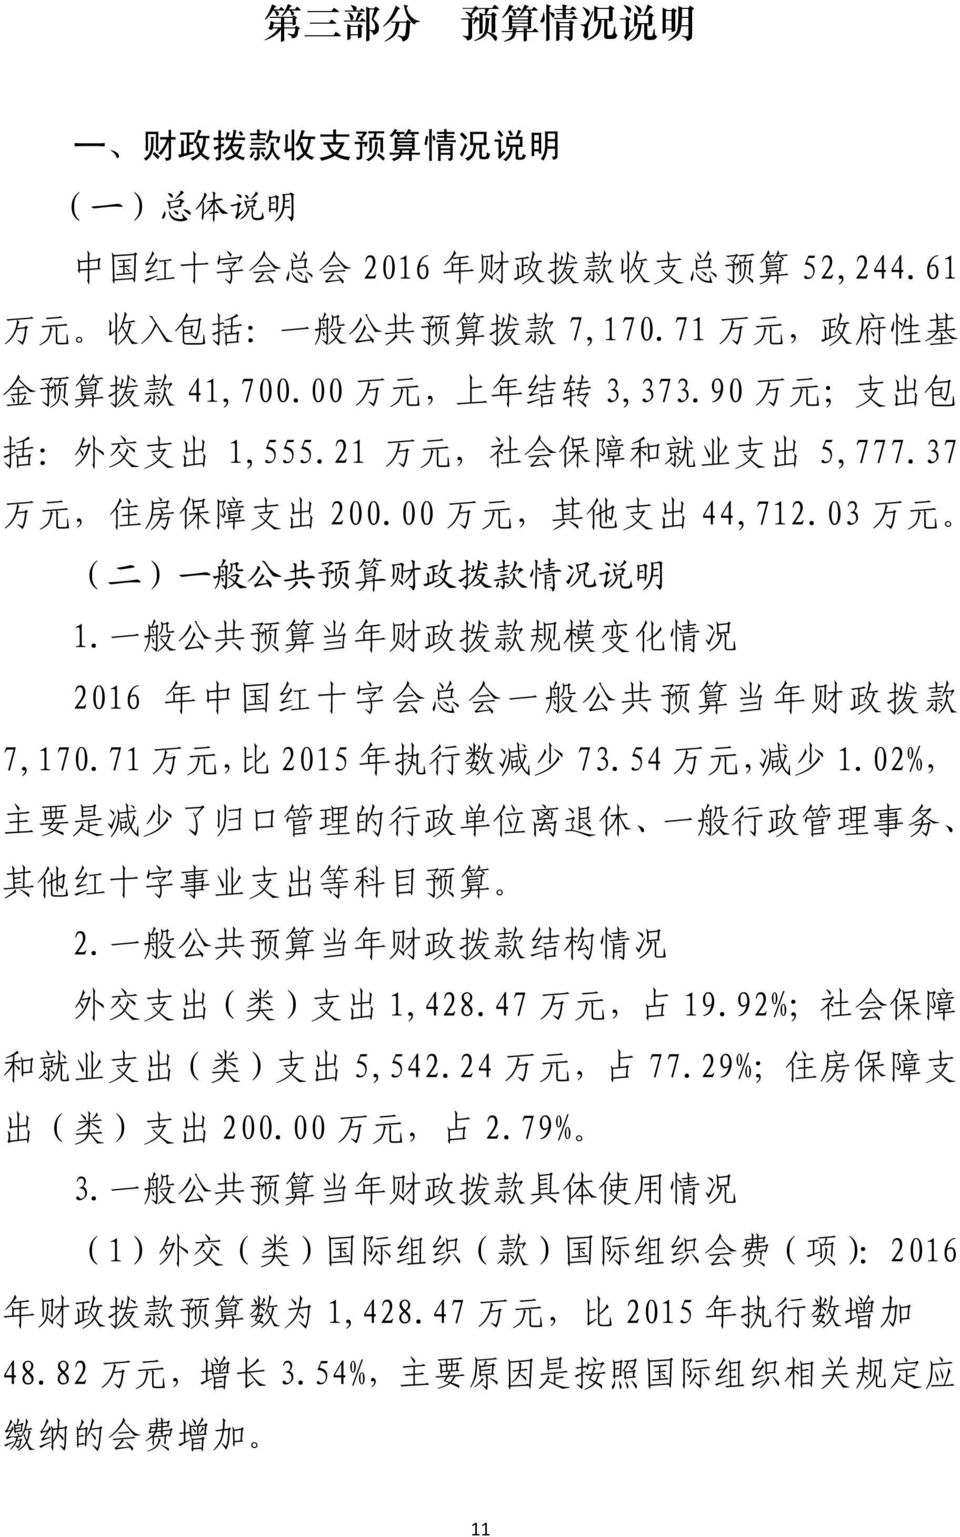 一 般 公 共 预 算 当 年 财 政 拨 款 规 模 变 化 情 况 2016 年 中 国 红 十 字 会 总 会 一 般 公 共 预 算 当 年 财 政 拨 款 7,170.71 万 元, 比 2015 年 执 行 数 减 少 73.54 万 元, 减 少 1.